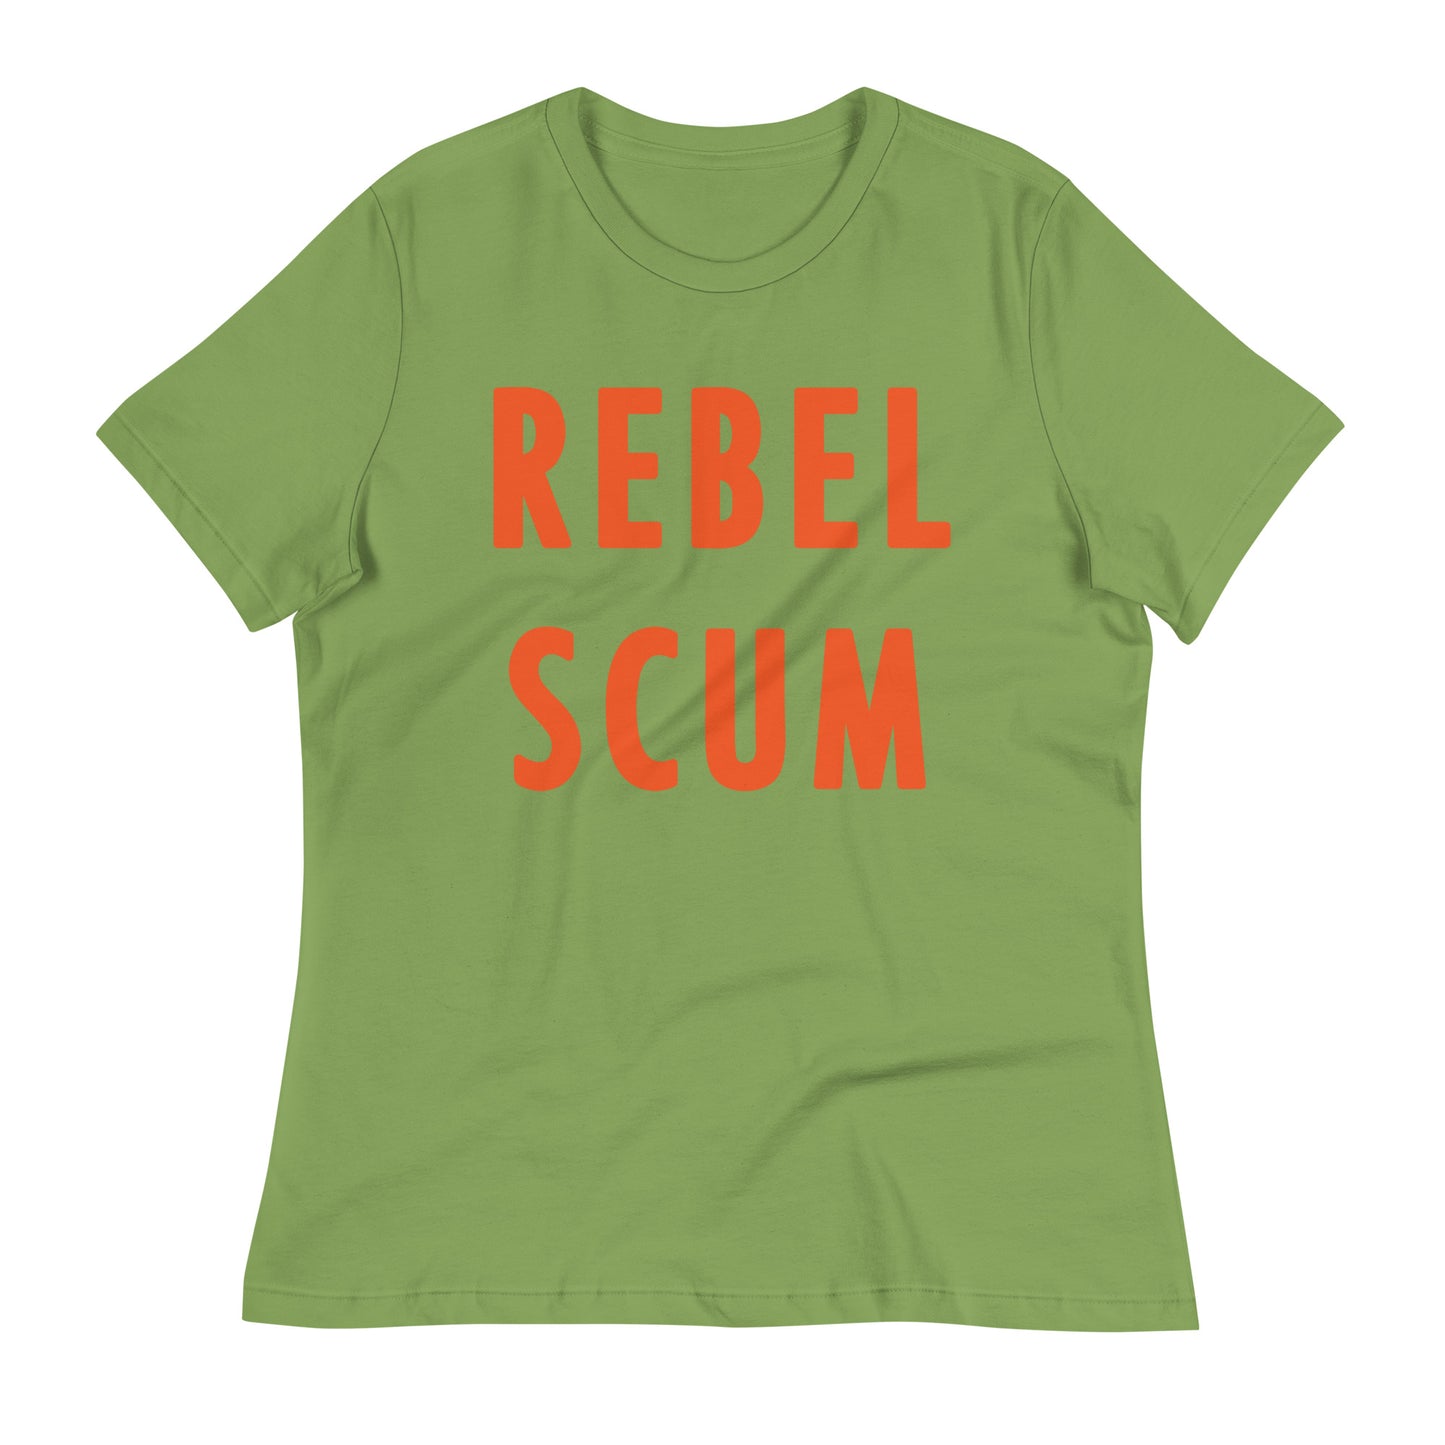 Rebel Scum Women's Signature Tee